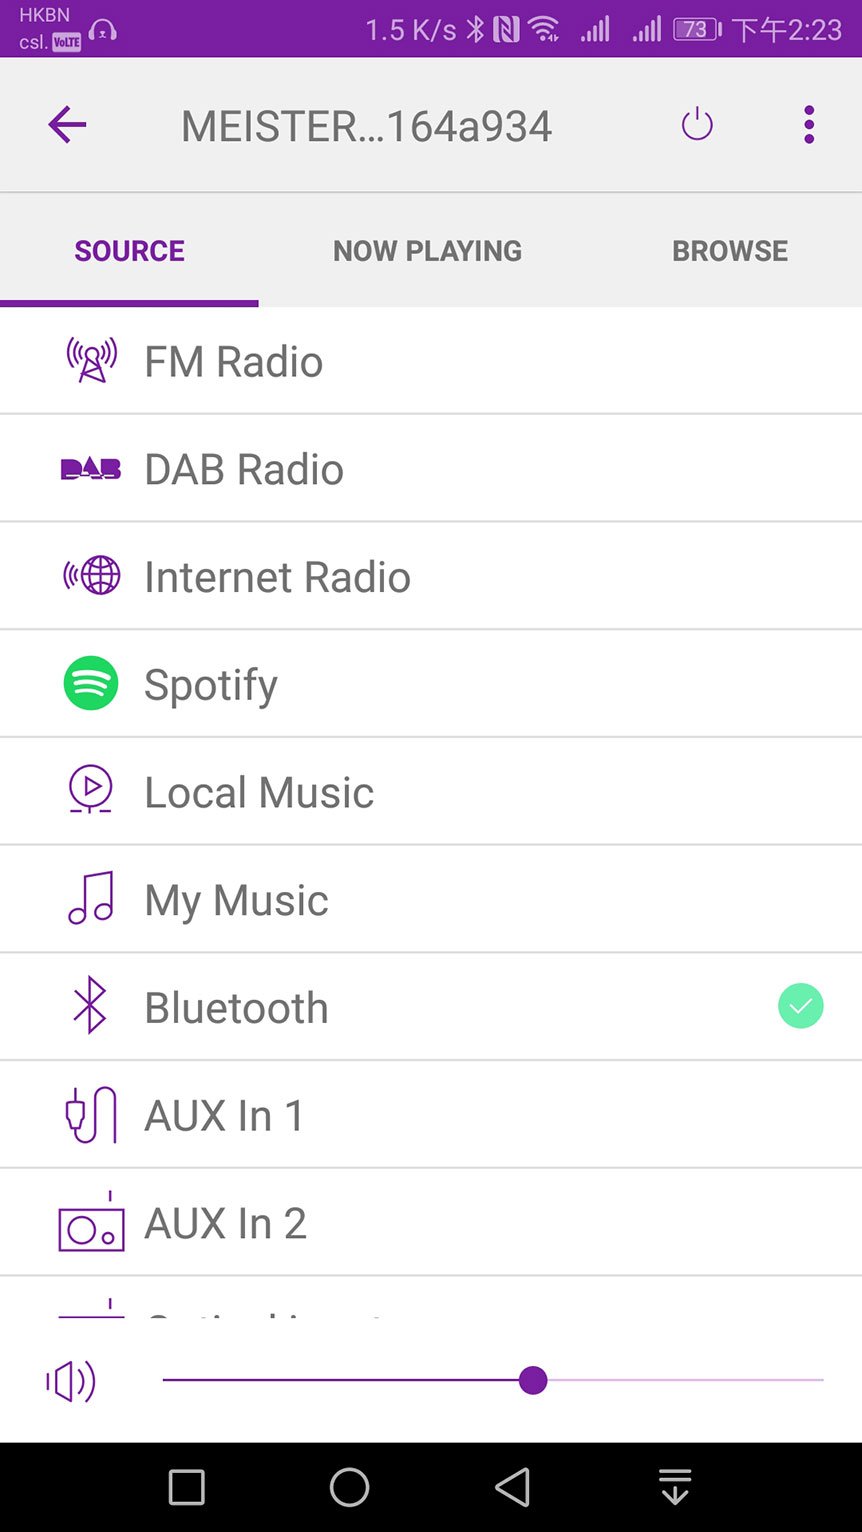 Sonoro 推出的這款 CD 機連網絡播放器 Masterpiece，德文原名叫做「MEISTERSTÜCK」，正正就是「Masterpiece」傑作的意思。可見雖然係一體機，不過 Sonoro 將新機定位相當高，而事實上 Masterpiece 的功能以一體機來講的確幾齊全同吸引，既可以播到 CD，又支援藍牙 aptX、Wi-Fi，以 Spotify、DLNA 播歌都可以，仲可以支援 Multi-room 功能，至於操控同音質係點？今次就同大家試試。